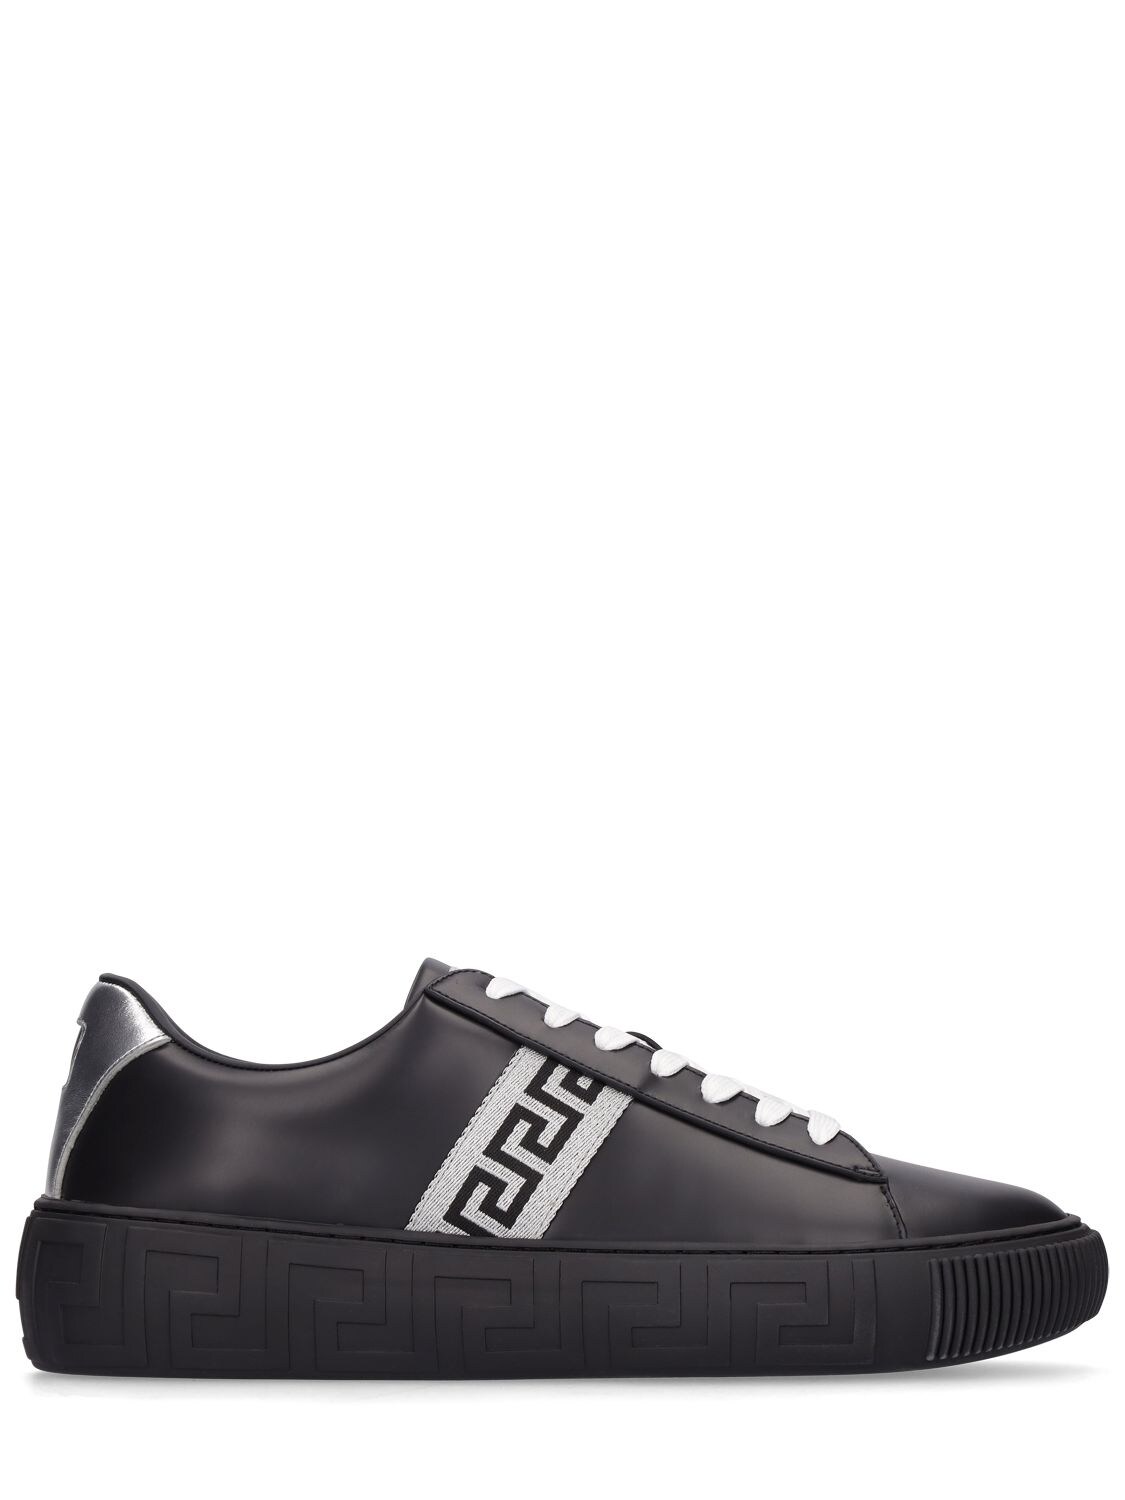 Greca Signature Leather Sneakers